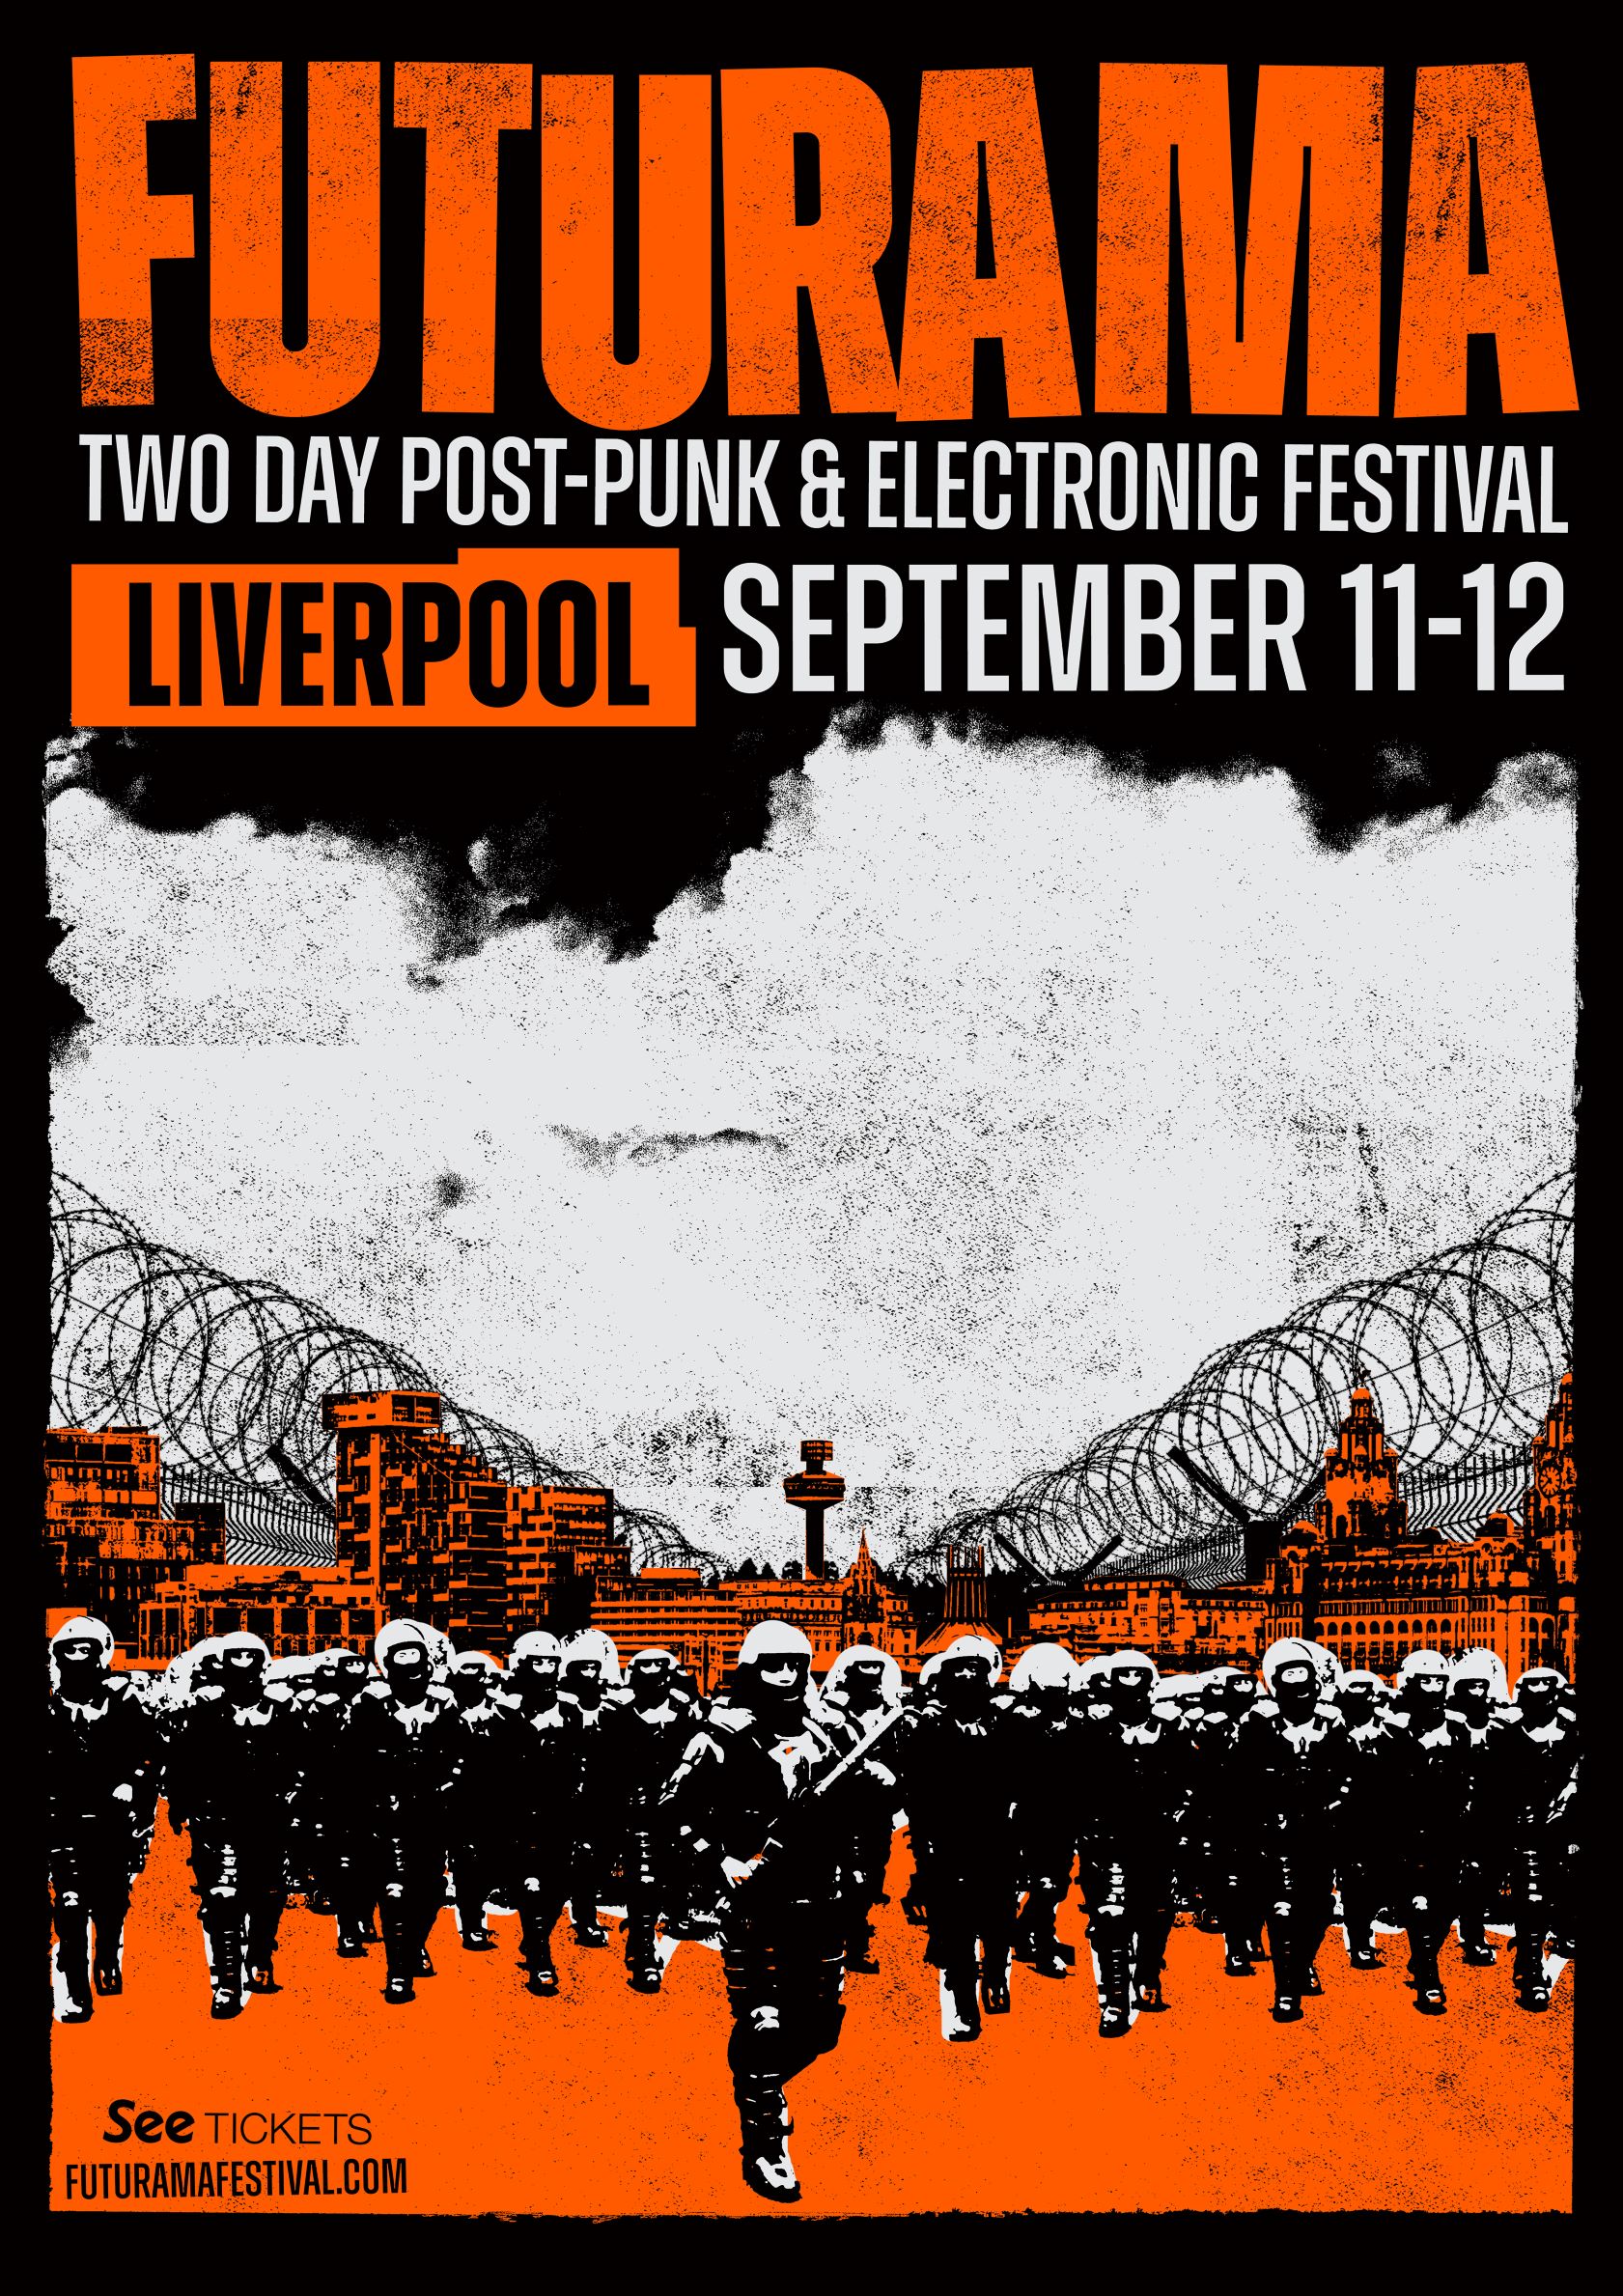 futurama festival poster in orange and black